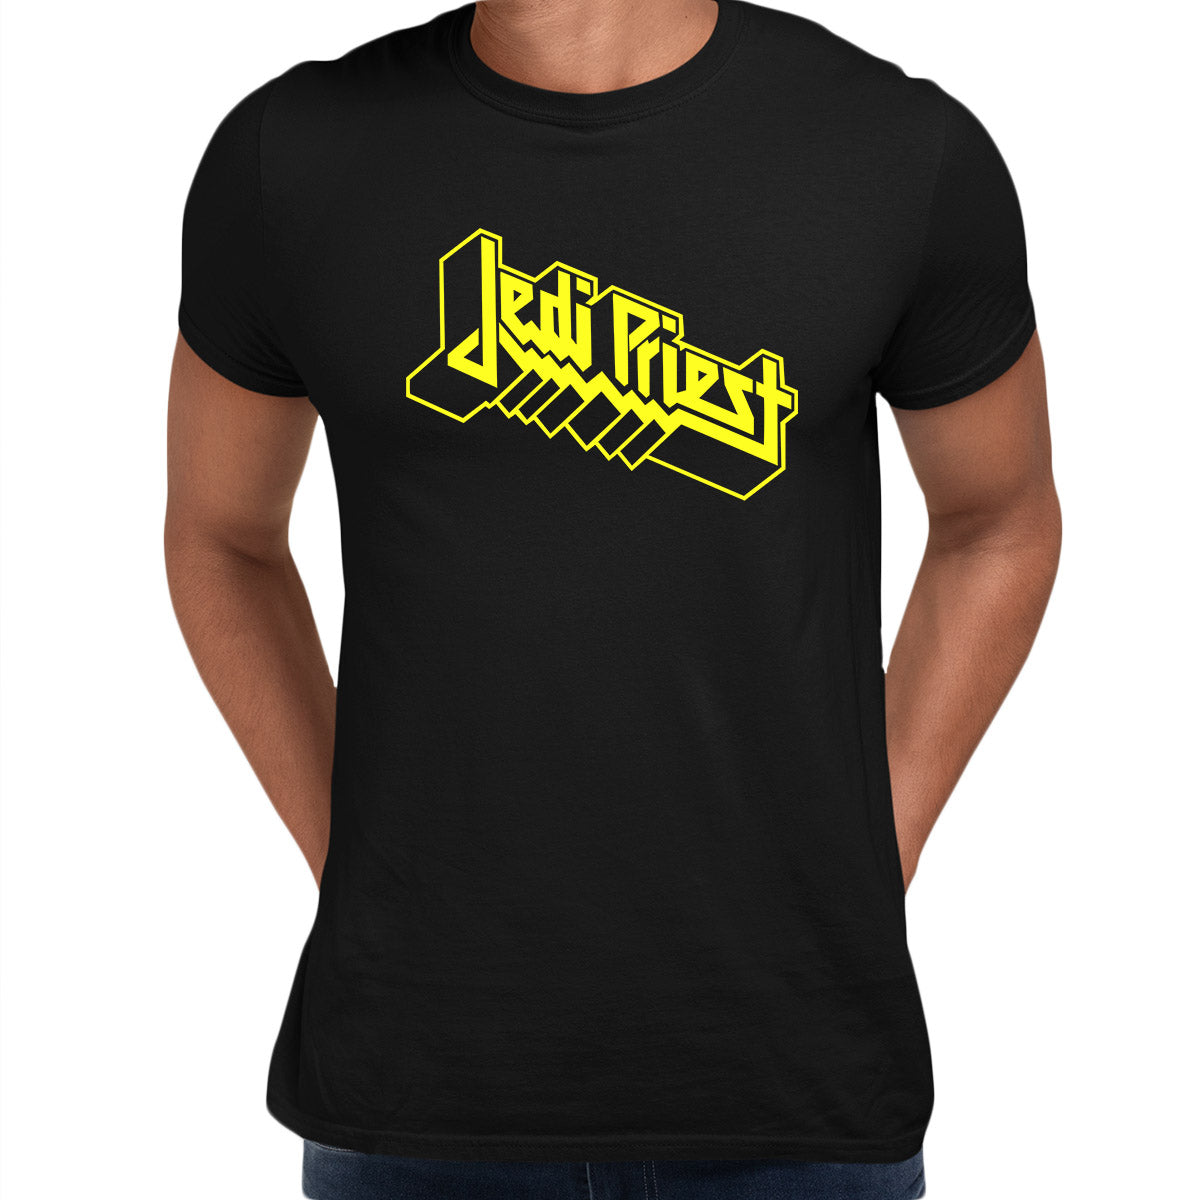 Jedi Priest Star Wars Universe Adult Unisex Black T-Shirt